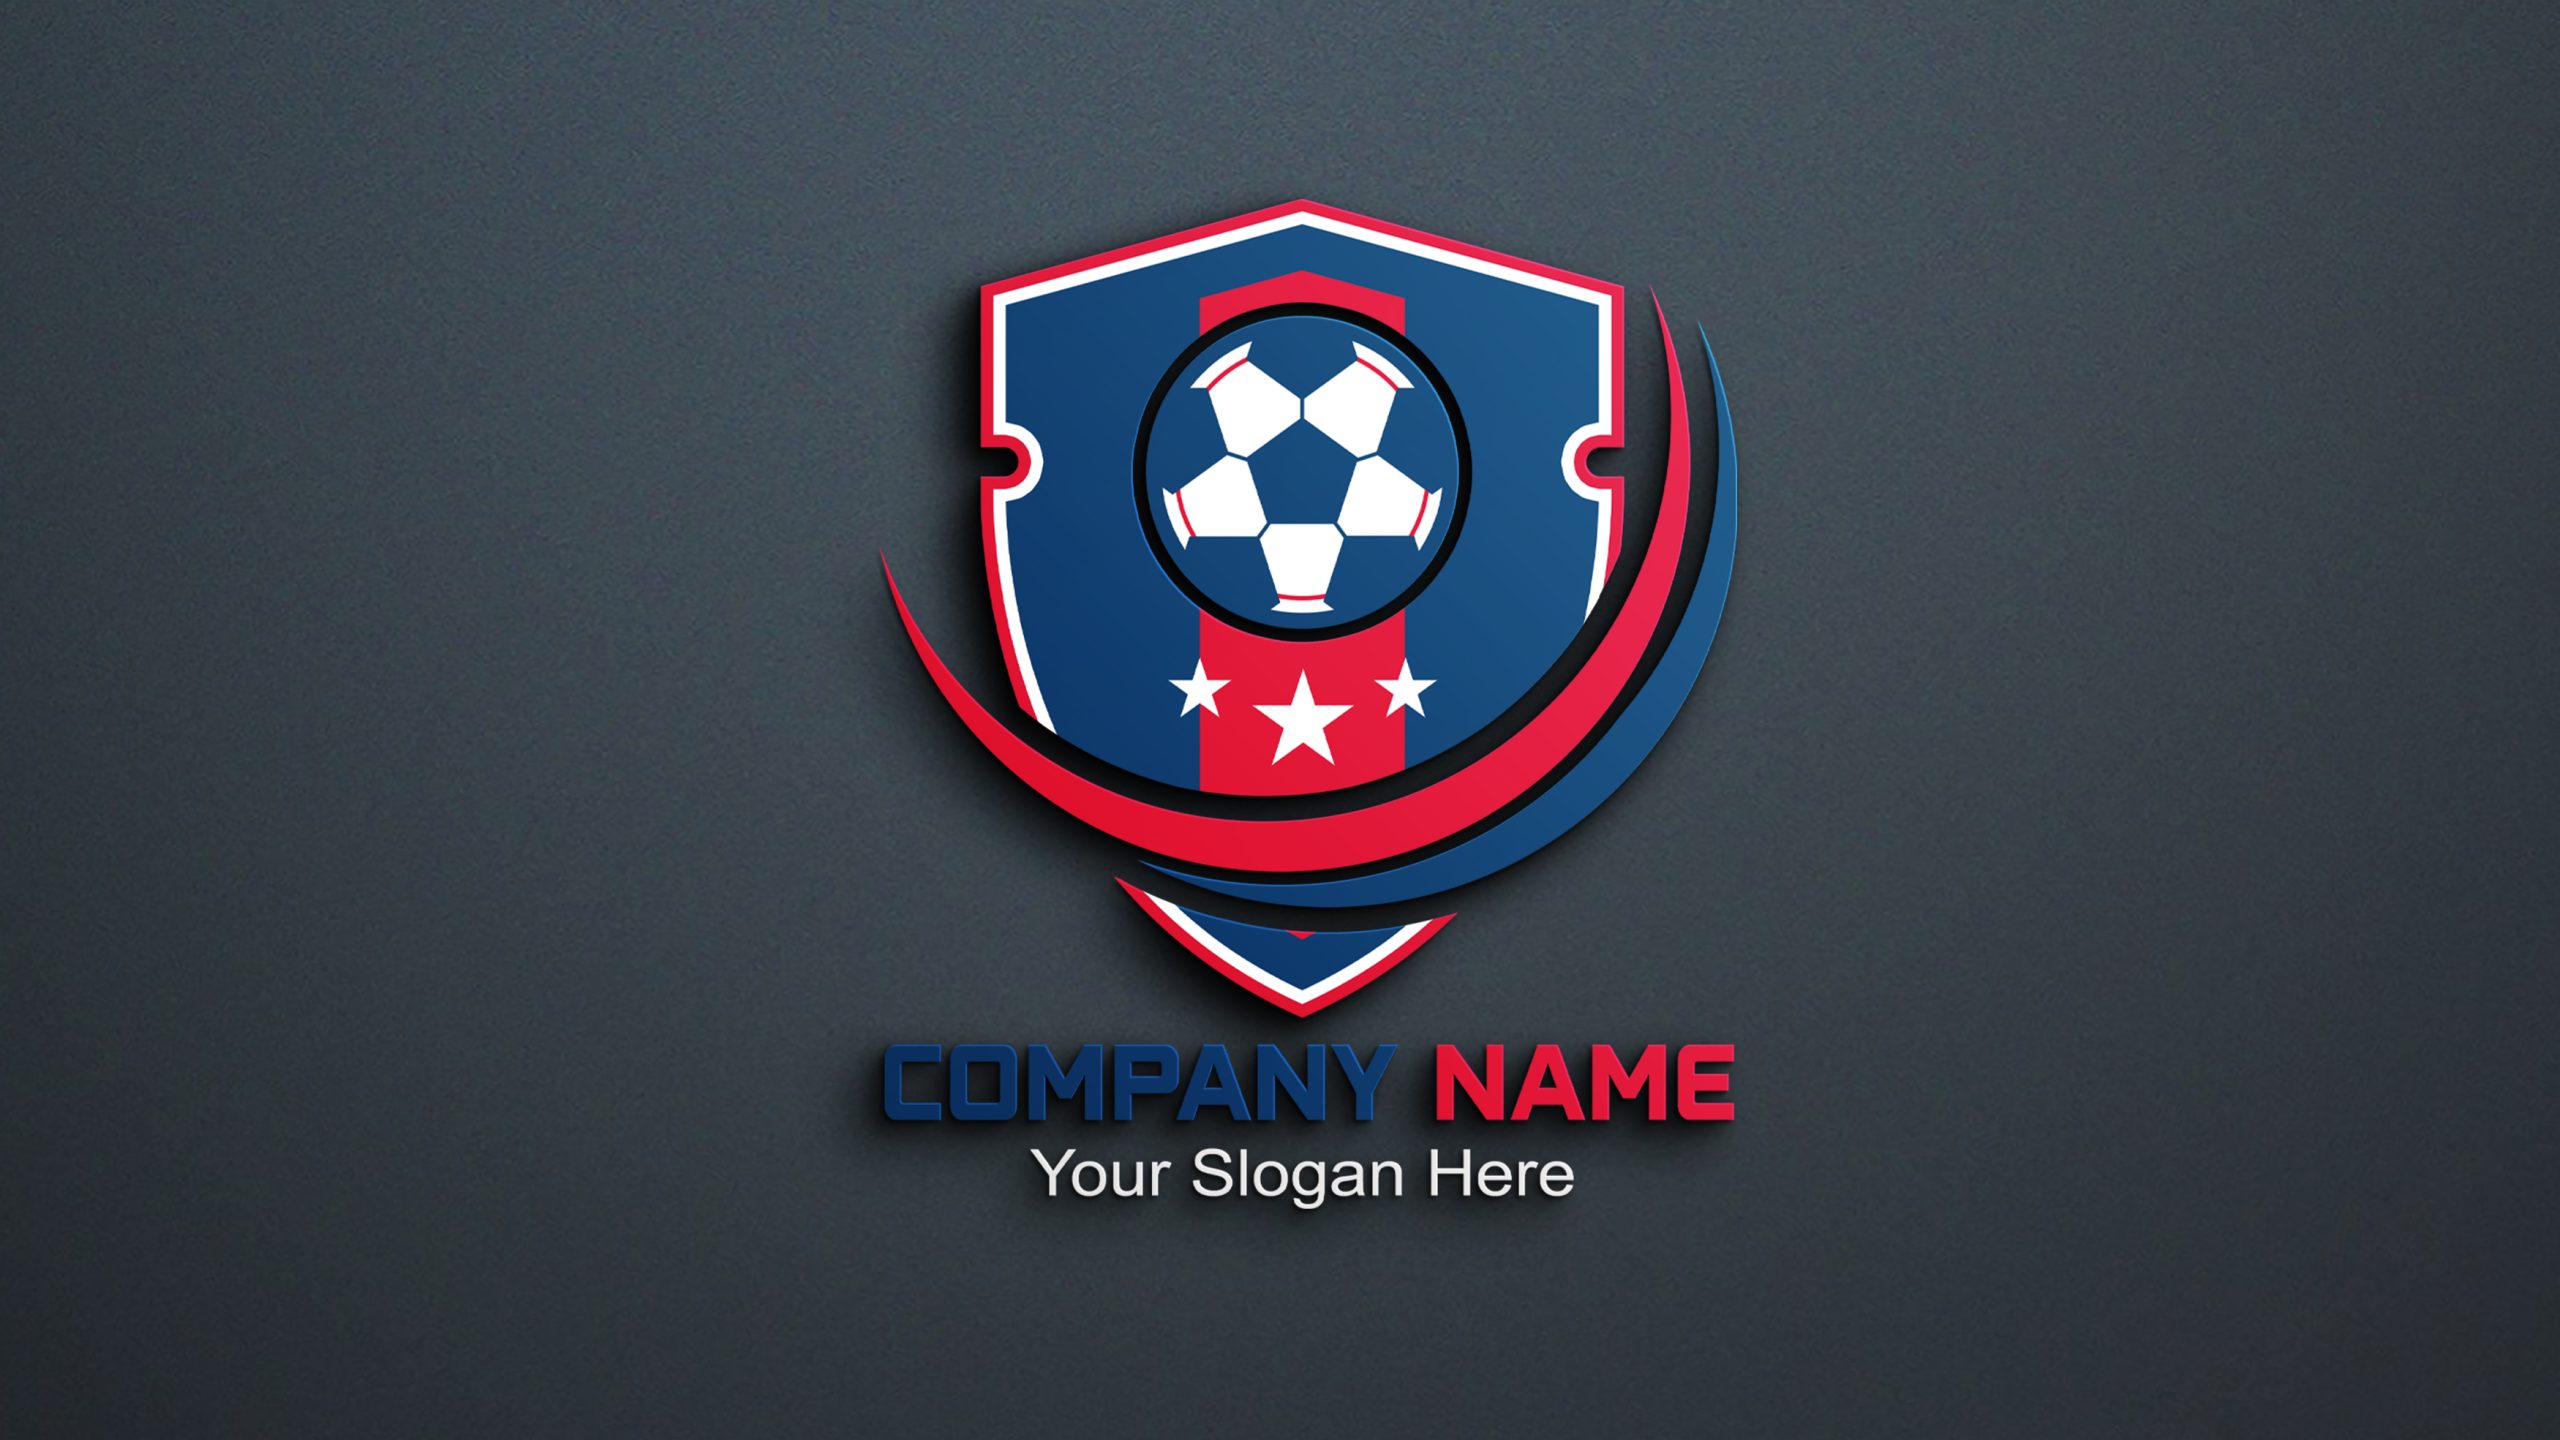 sports club logo creator